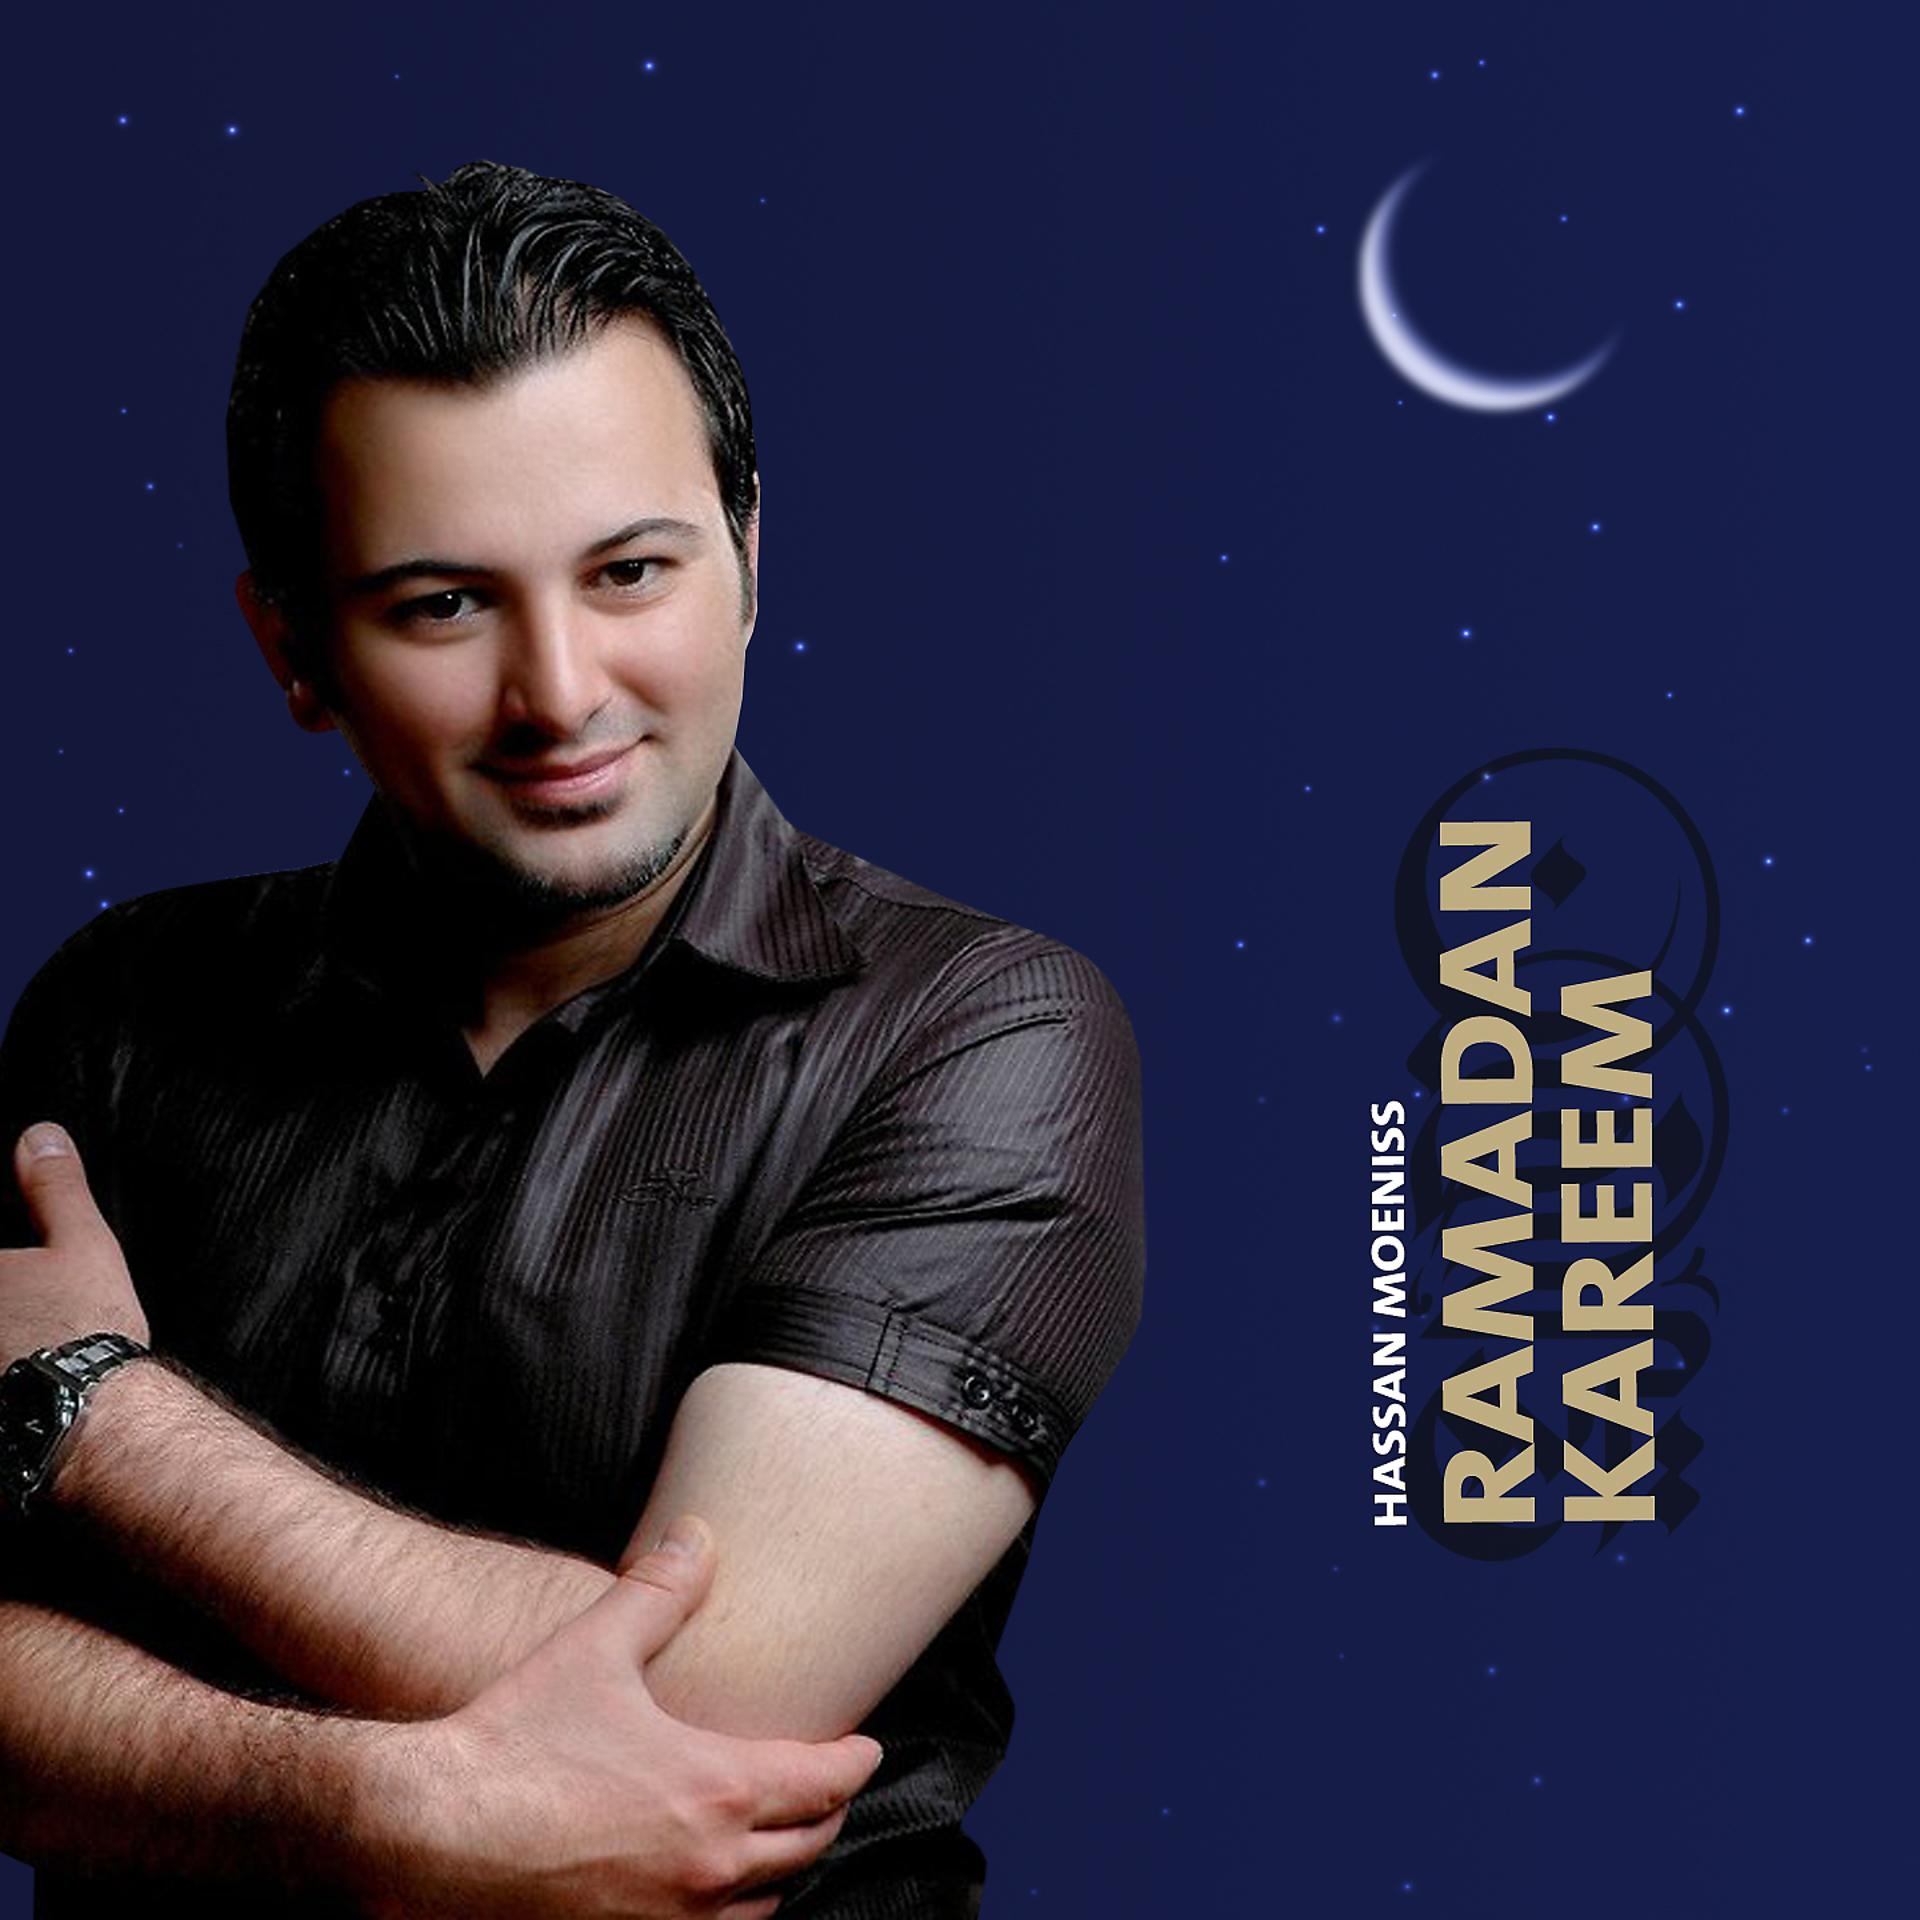 Постер альбома Ramadan Kareem